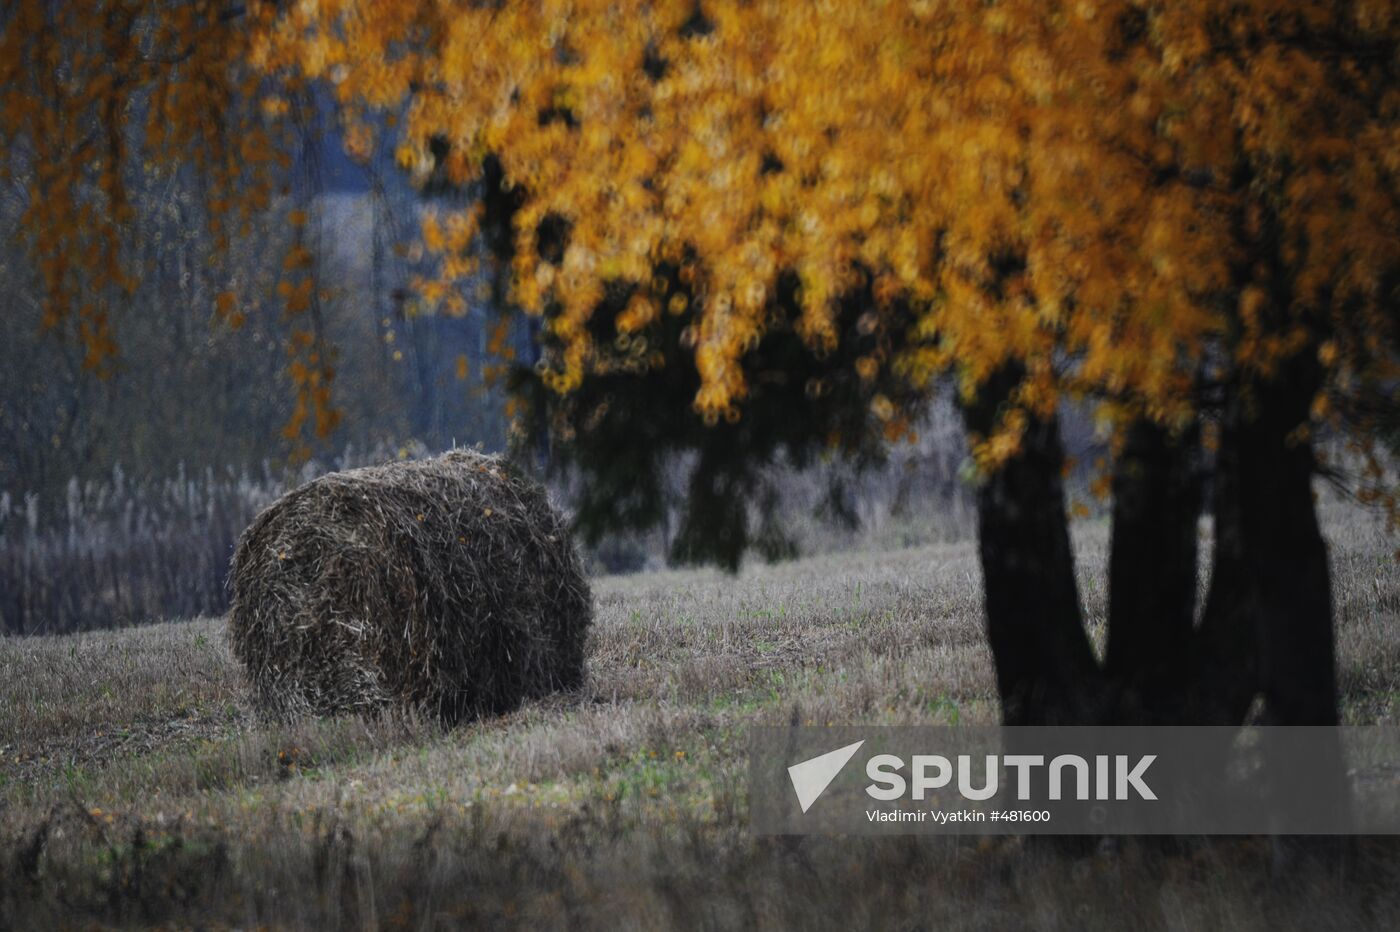 Autumn in Vladimir Region